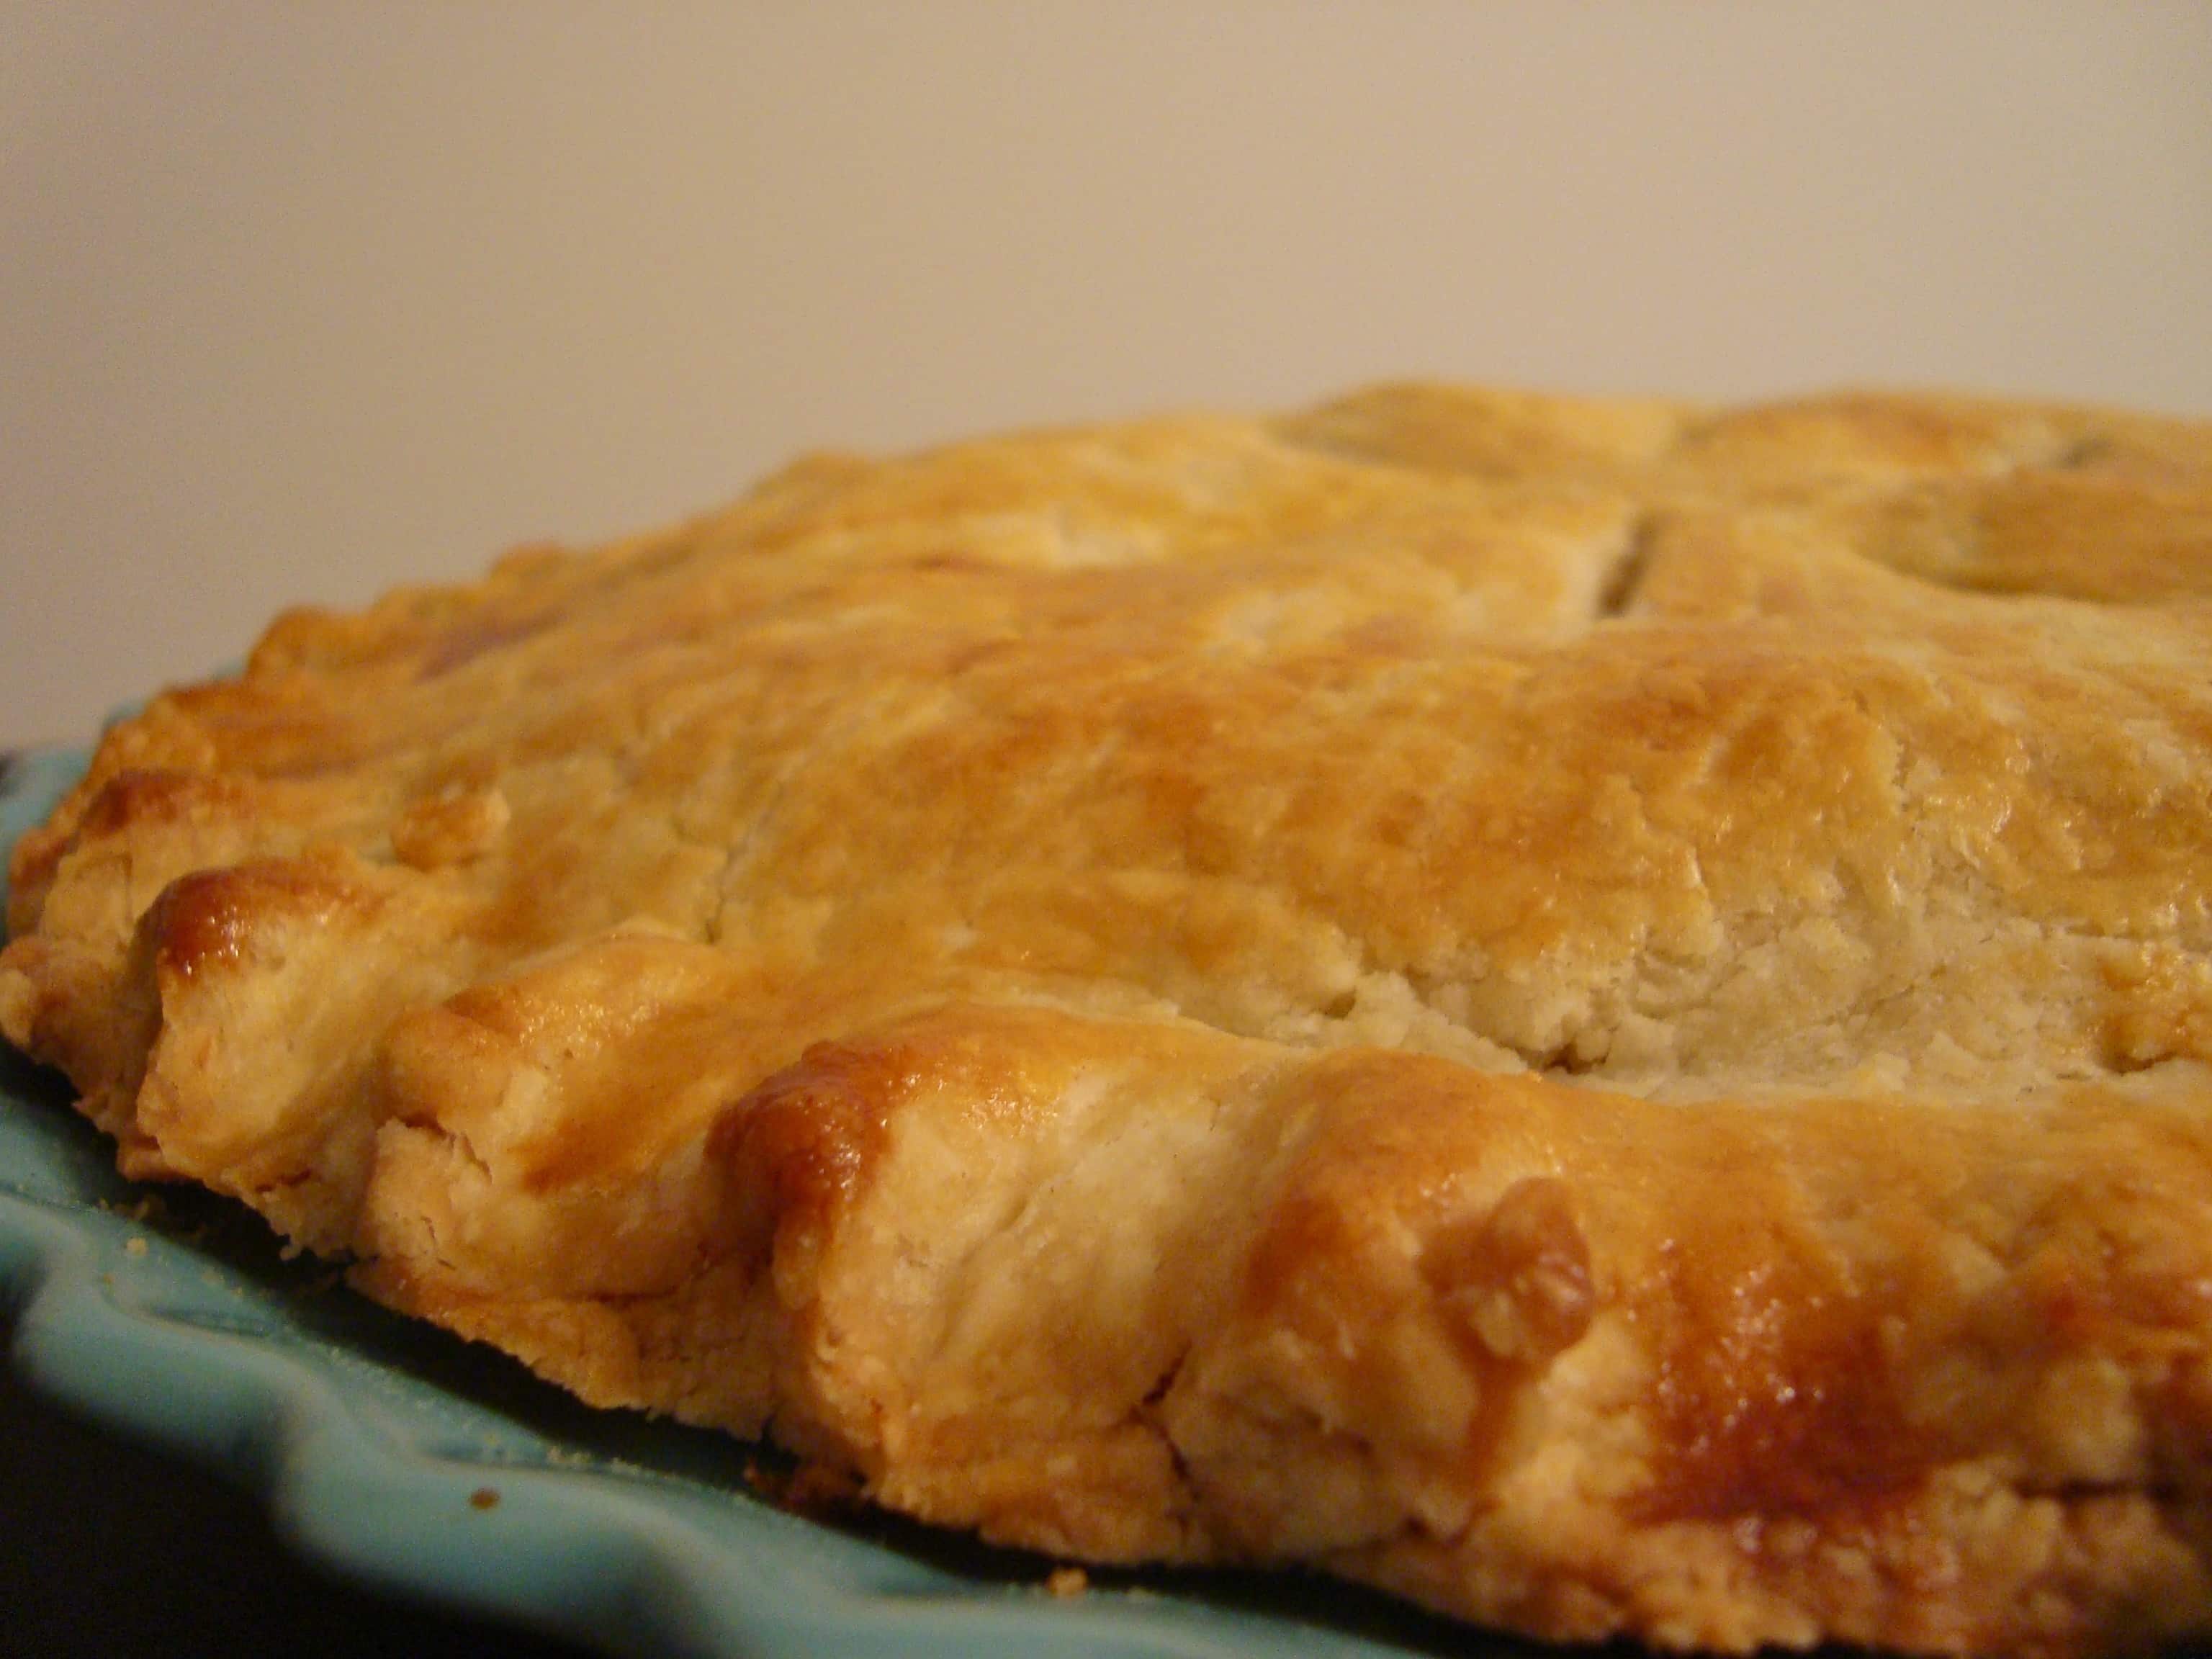 Double Crust Chicken Pot Pie ⋆ Real Housemoms